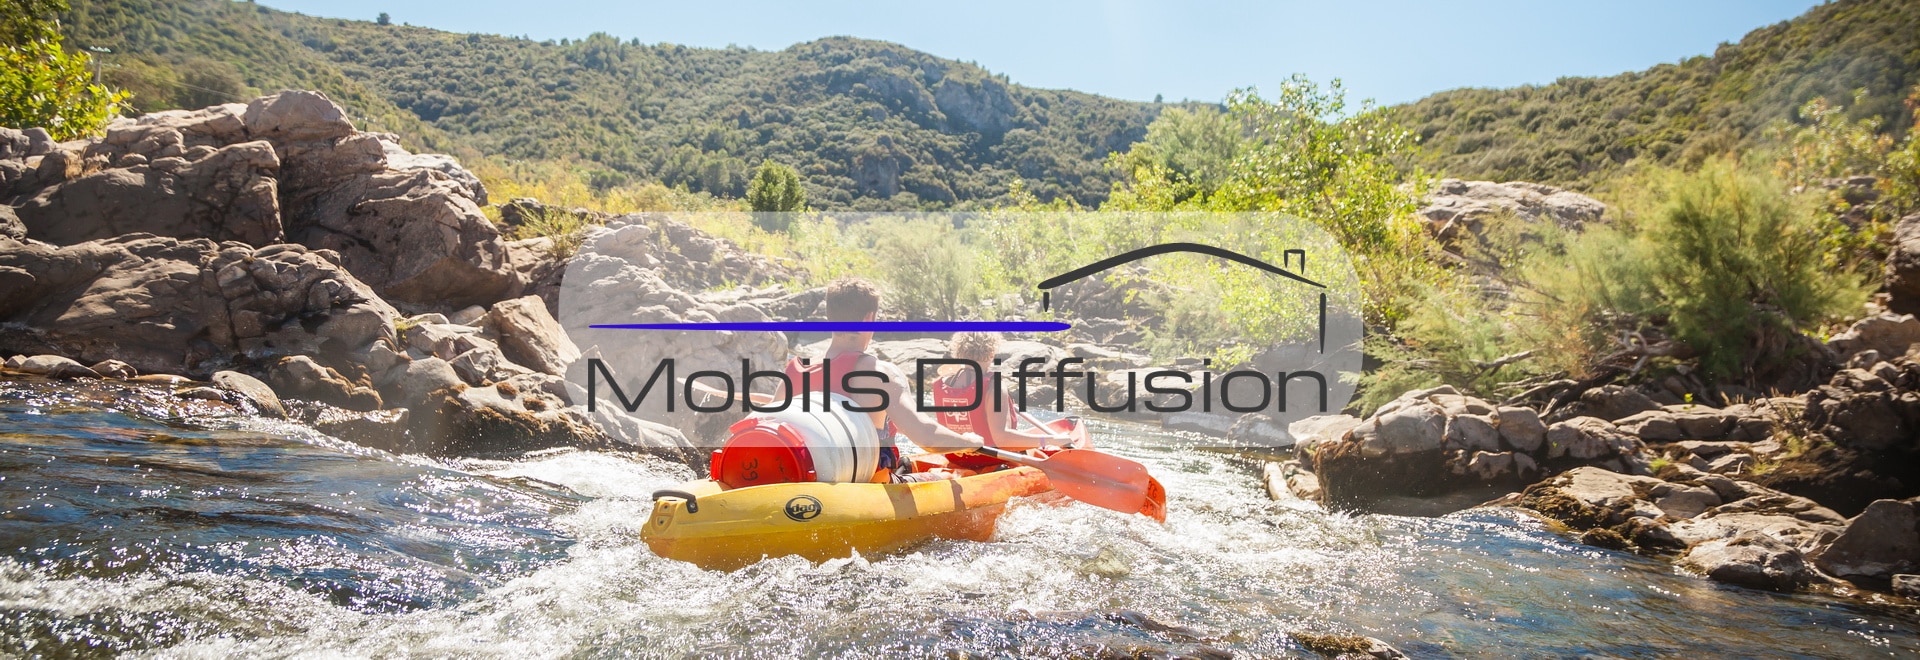 Mobils Diffusion - Terrain pour mobil-home au camping en Occitanie près de Béziers